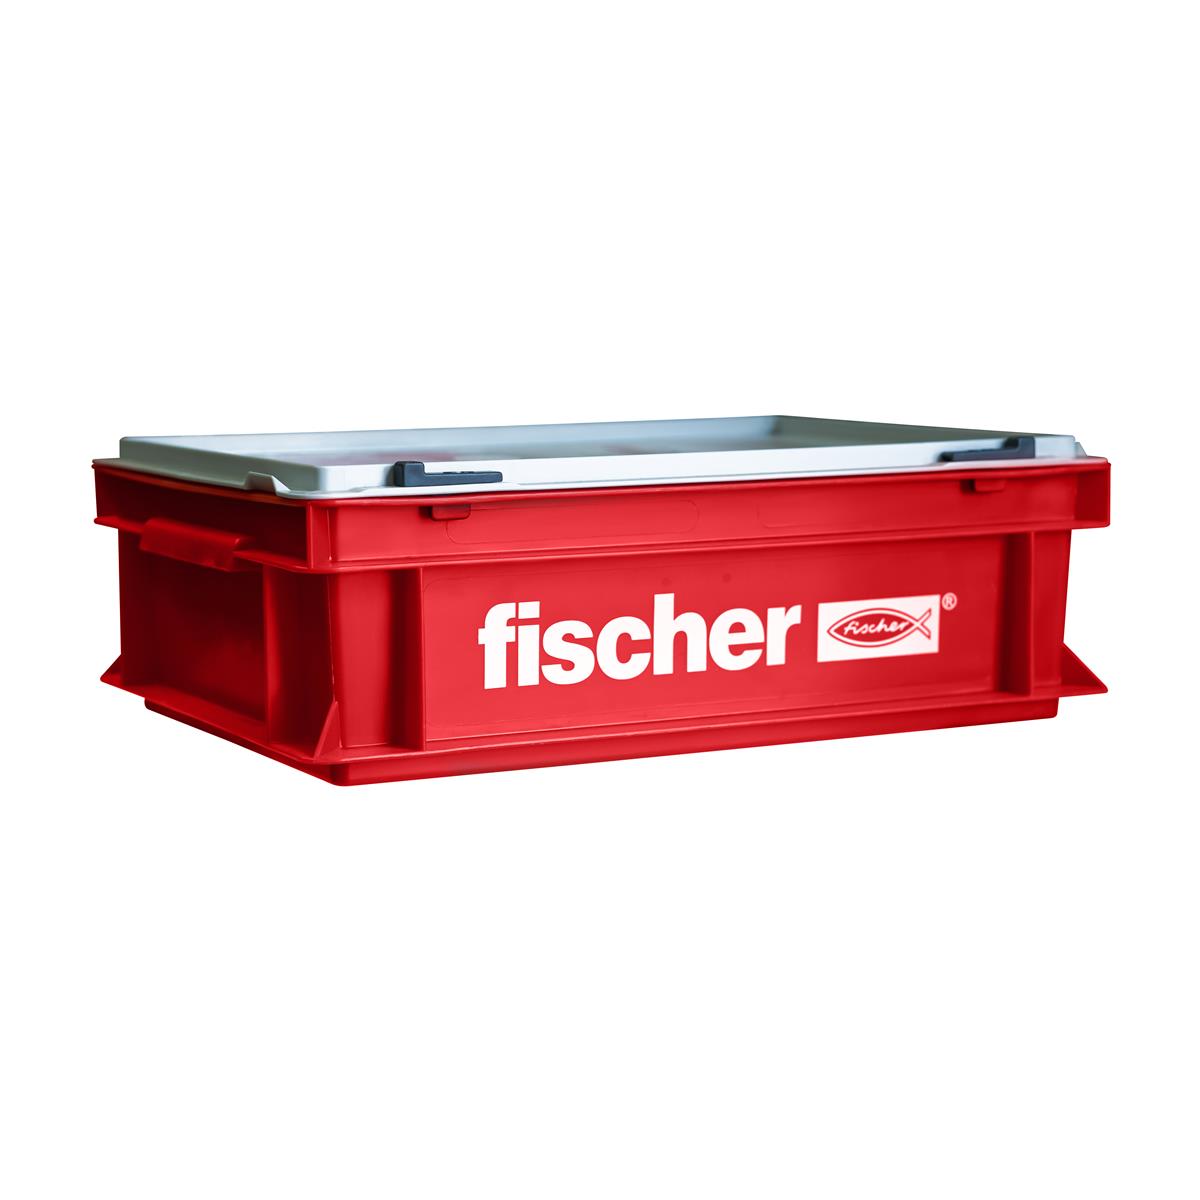 Fischer Euronormbehälter inkl. Scharnierdeckel | Werkzeugbox klein